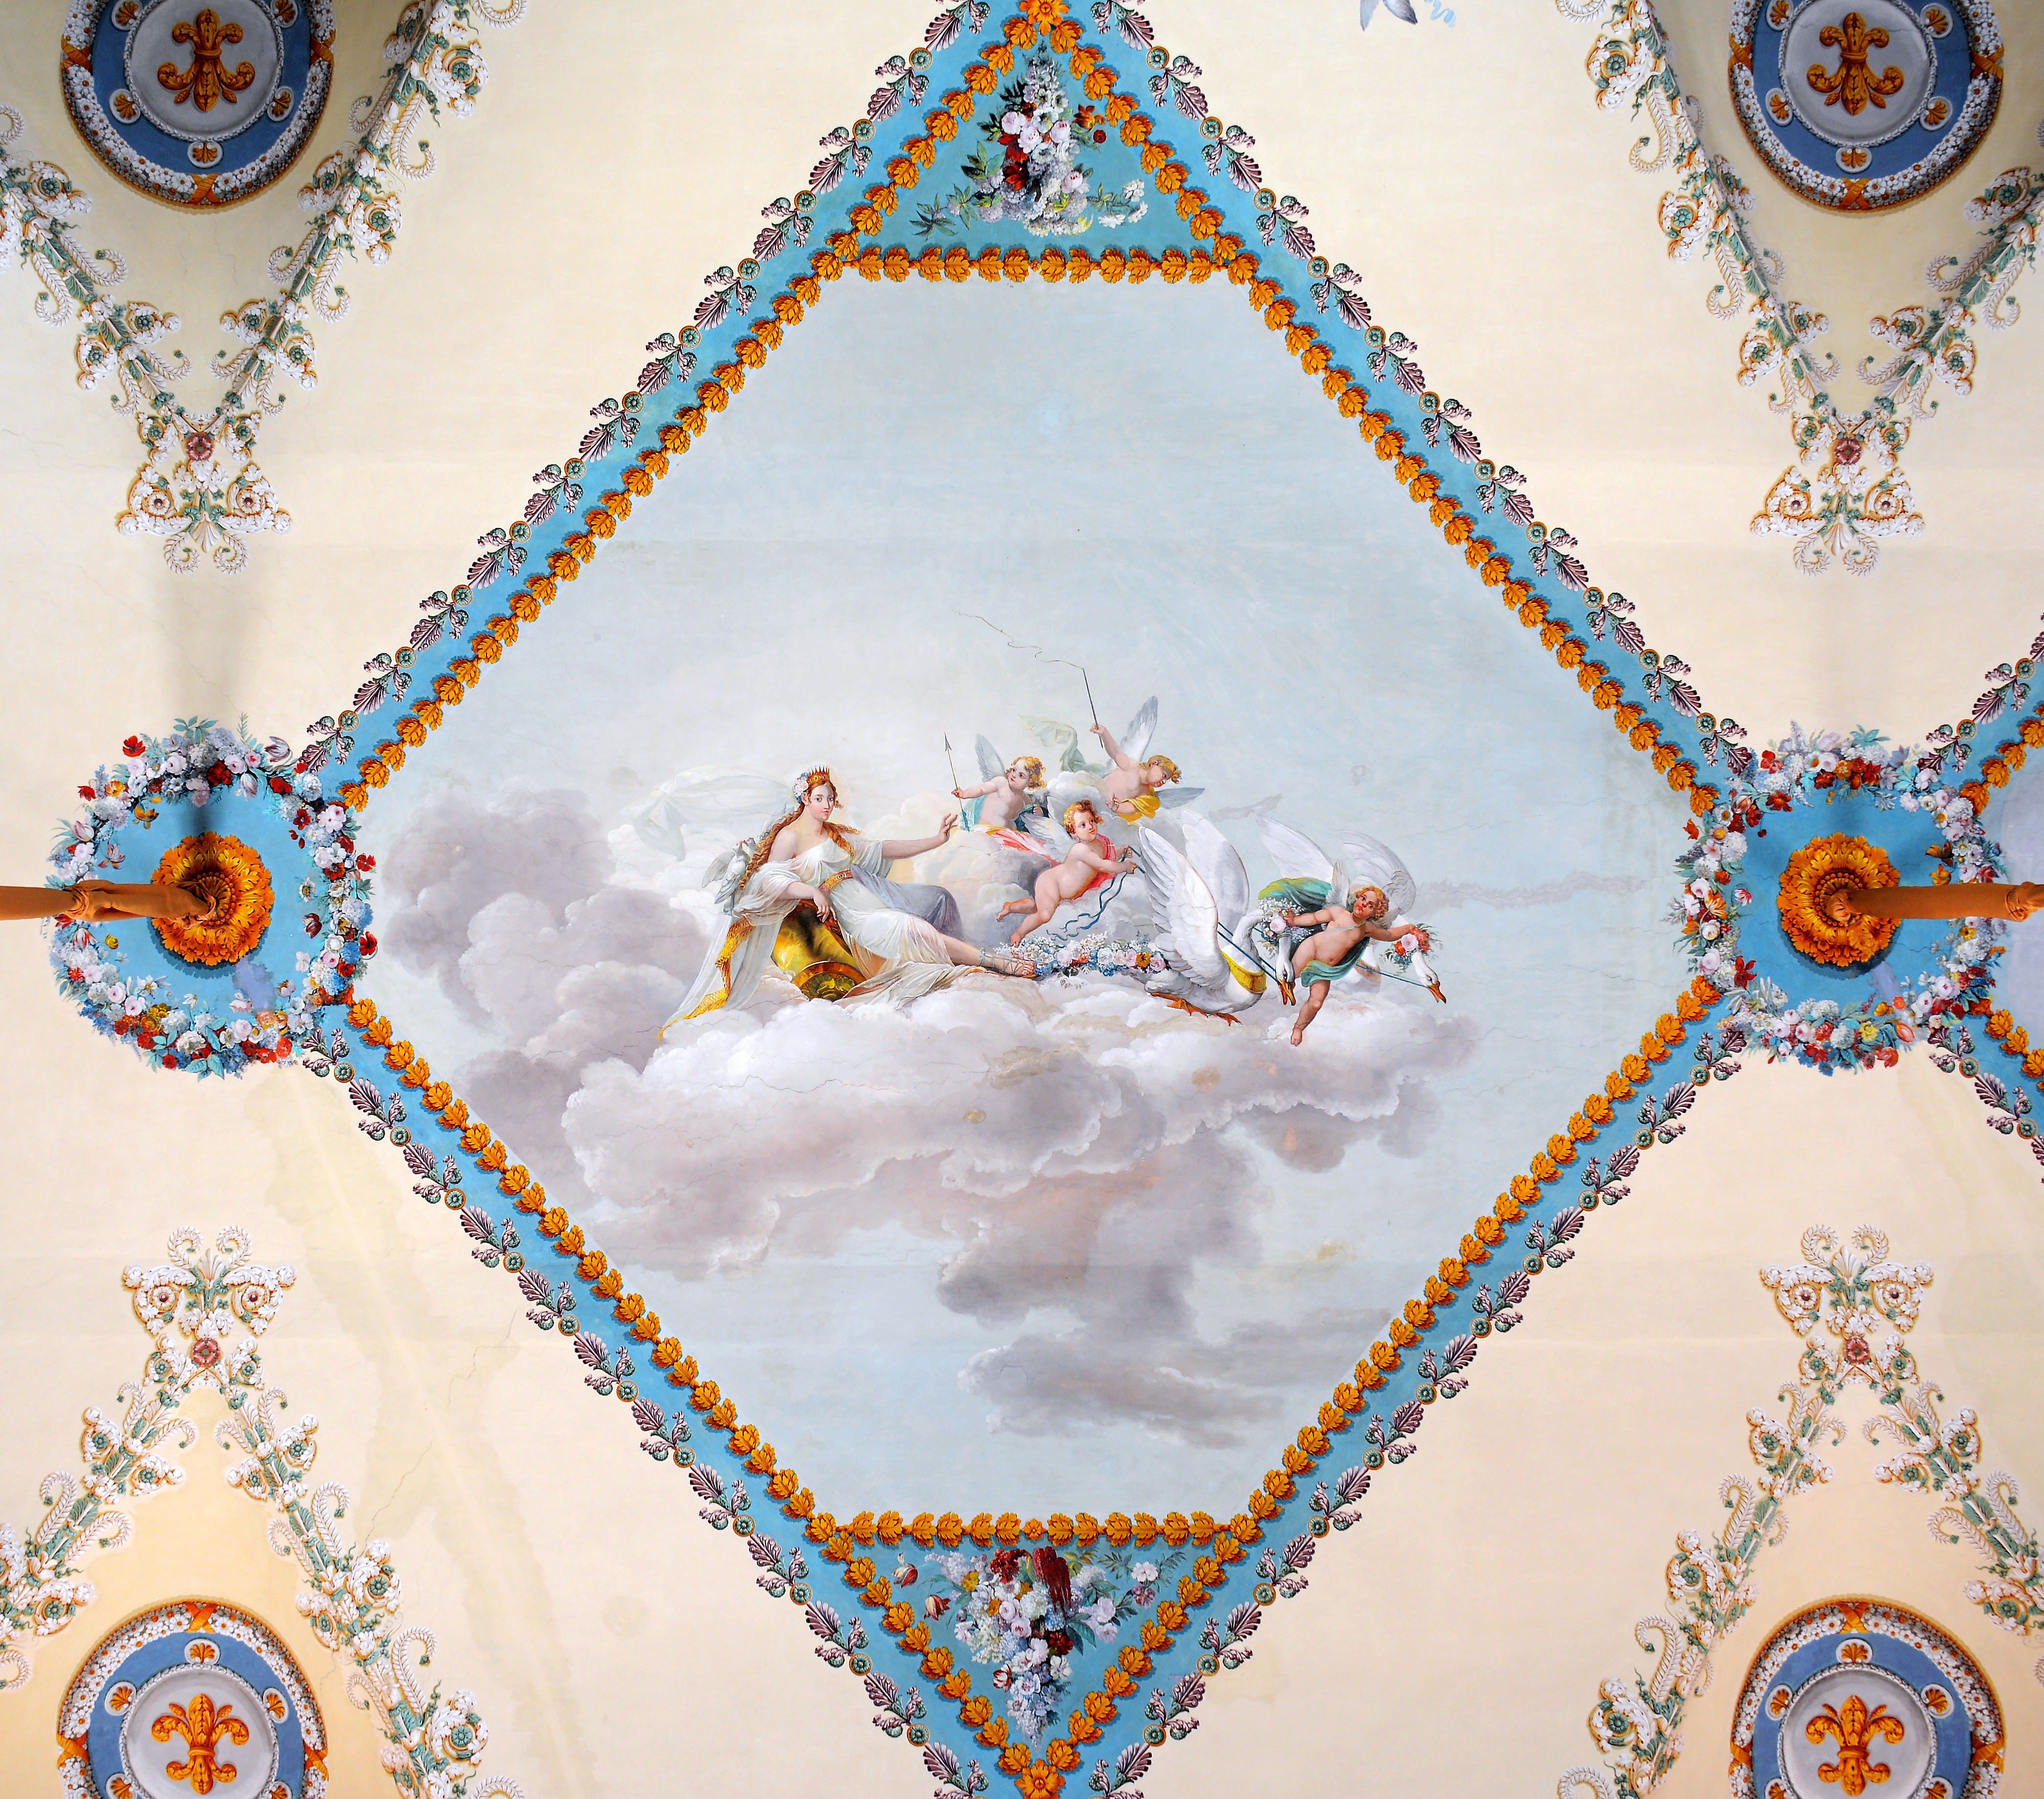 Decoration of Museo di Capodimonte (Napoli)